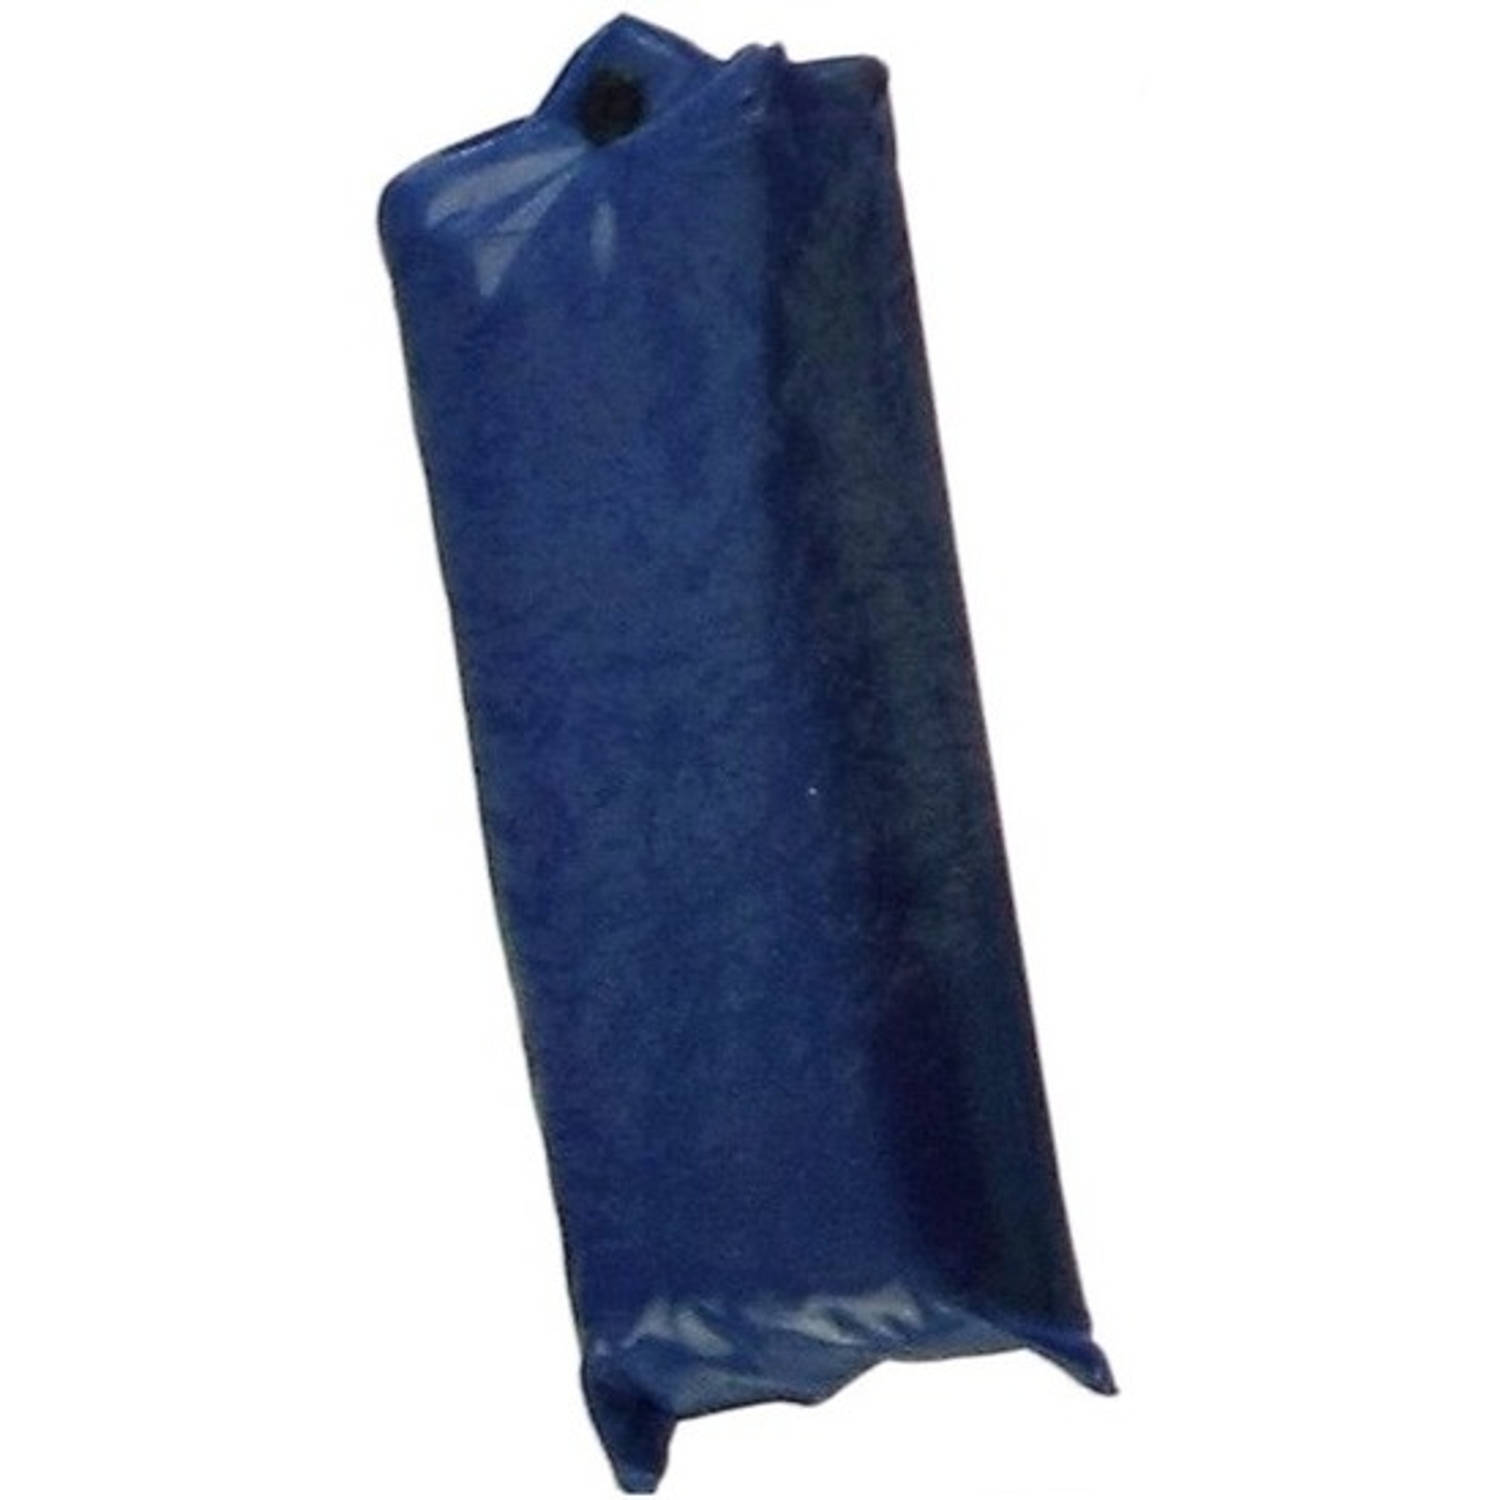 Trouw kalf gangpad Blauwe regenponcho met capuchon voor volwassenen - Regenponcho's | Blokker